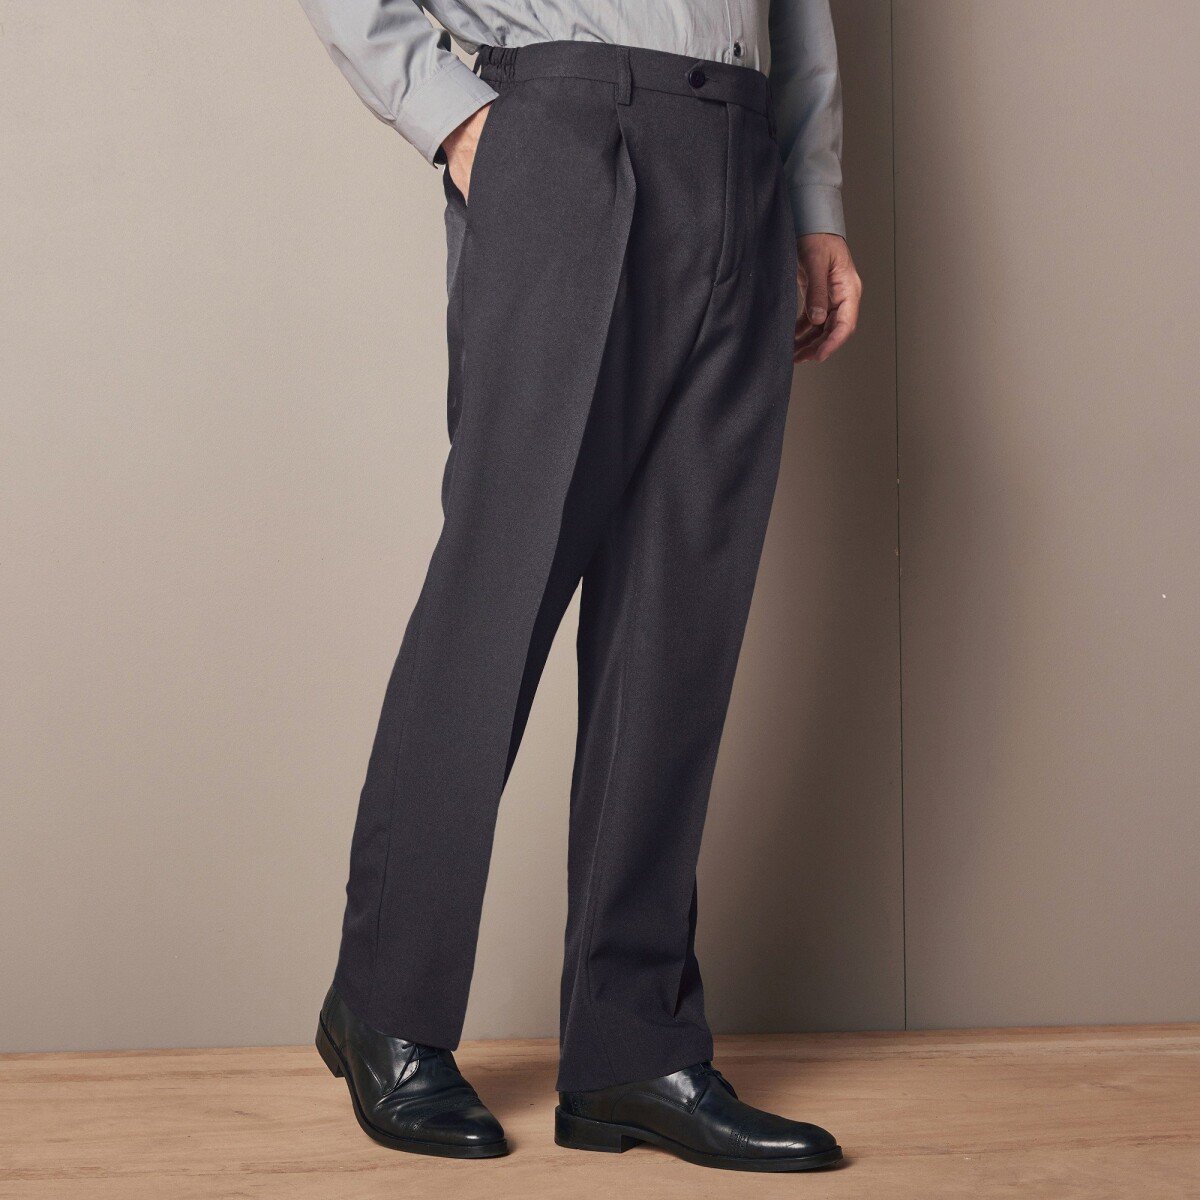 Kalhoty s nastavitelným pasem, polyester